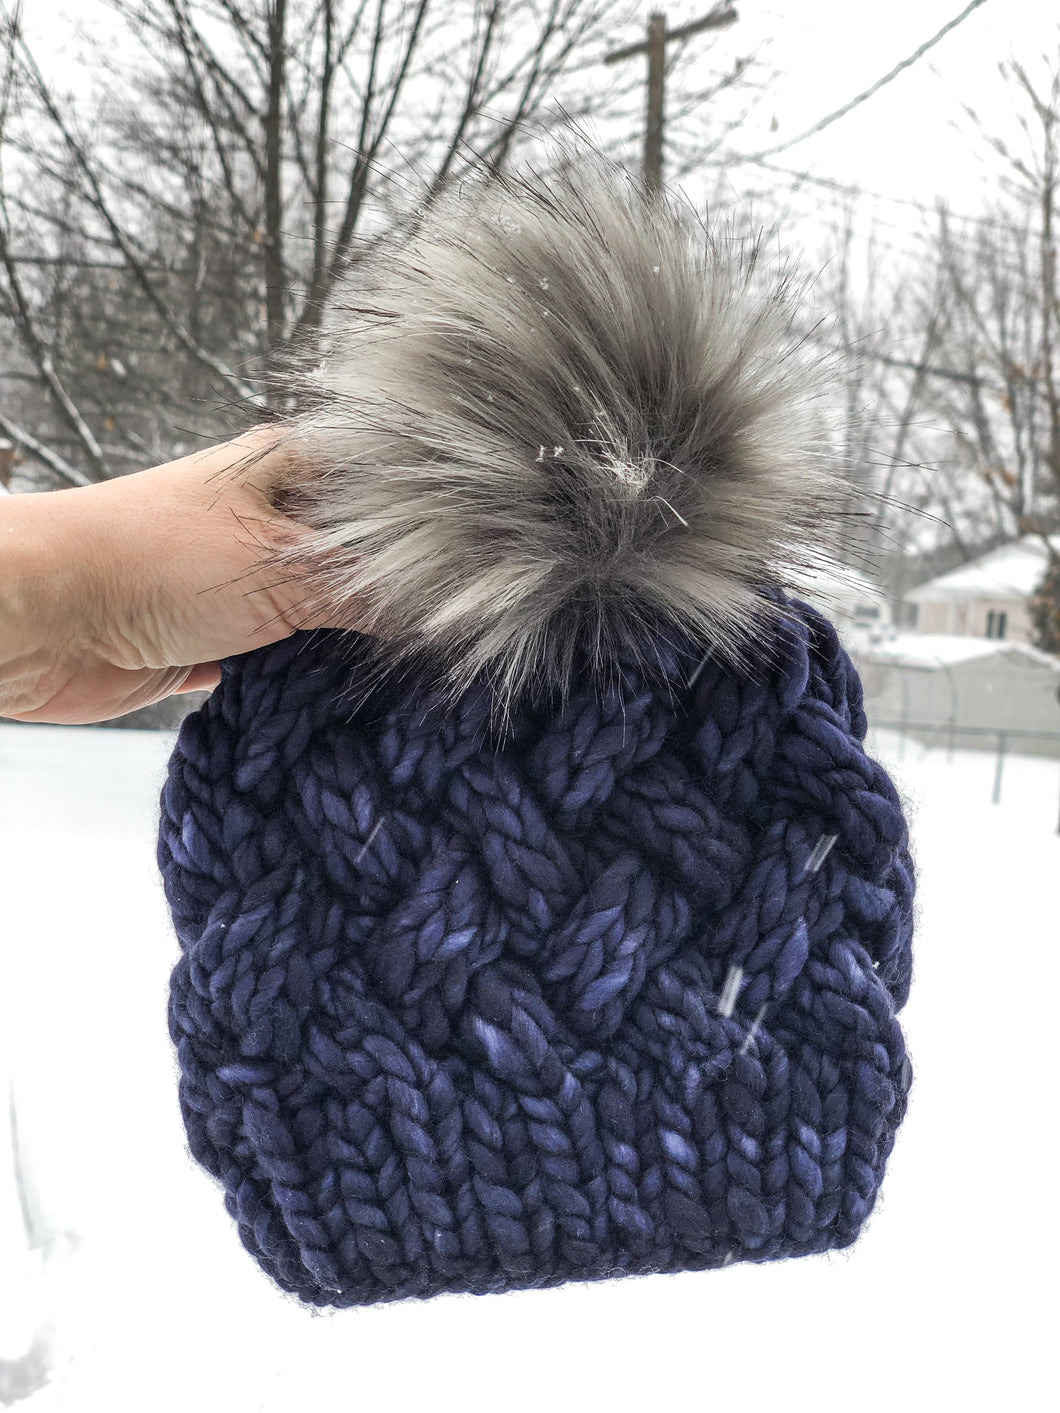 Yukon Slouch LUXURY Handmade 100% Merino Wool Knit Beanie in Malabrigo Rasta with detachable faux fur pom pom (Toddler Size) - Ready To Ship